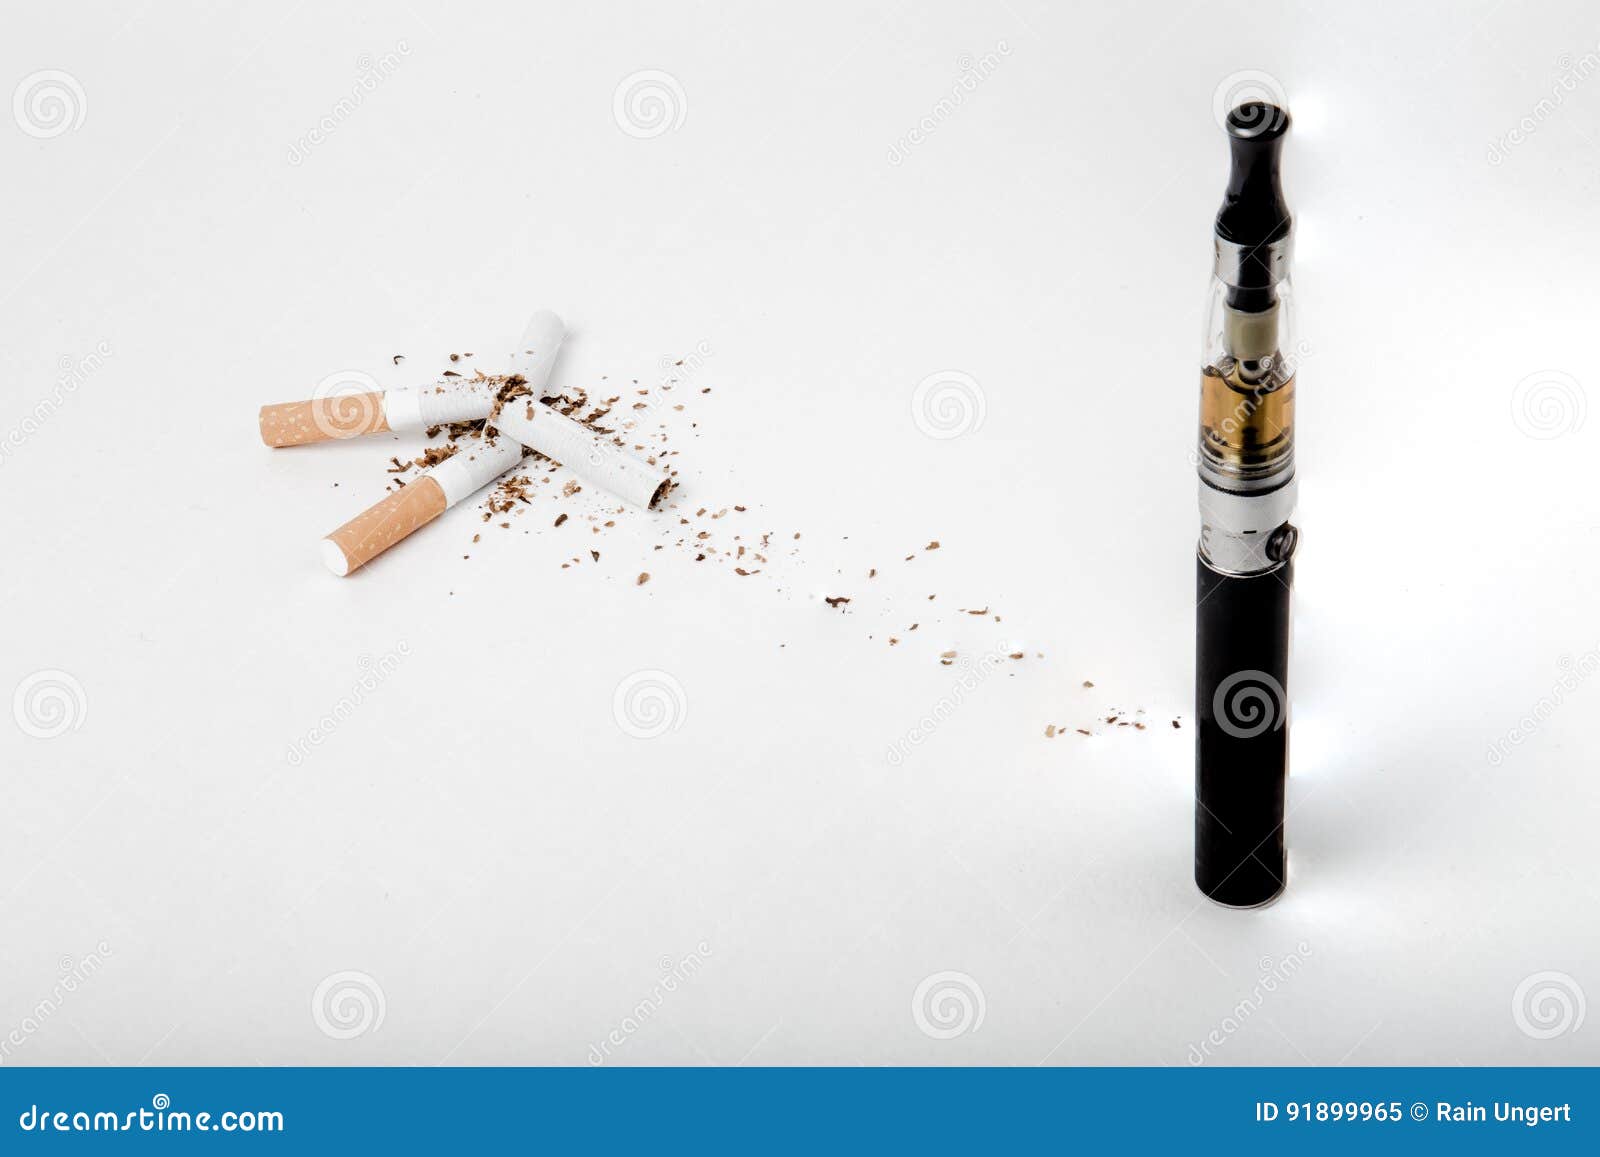 Мать спалила сигареты и табак. Сигареты-Concept. Обои на рабочий стол сигареты. Рисунки тематика табак сигареты электроники. Сигареты выгорания.